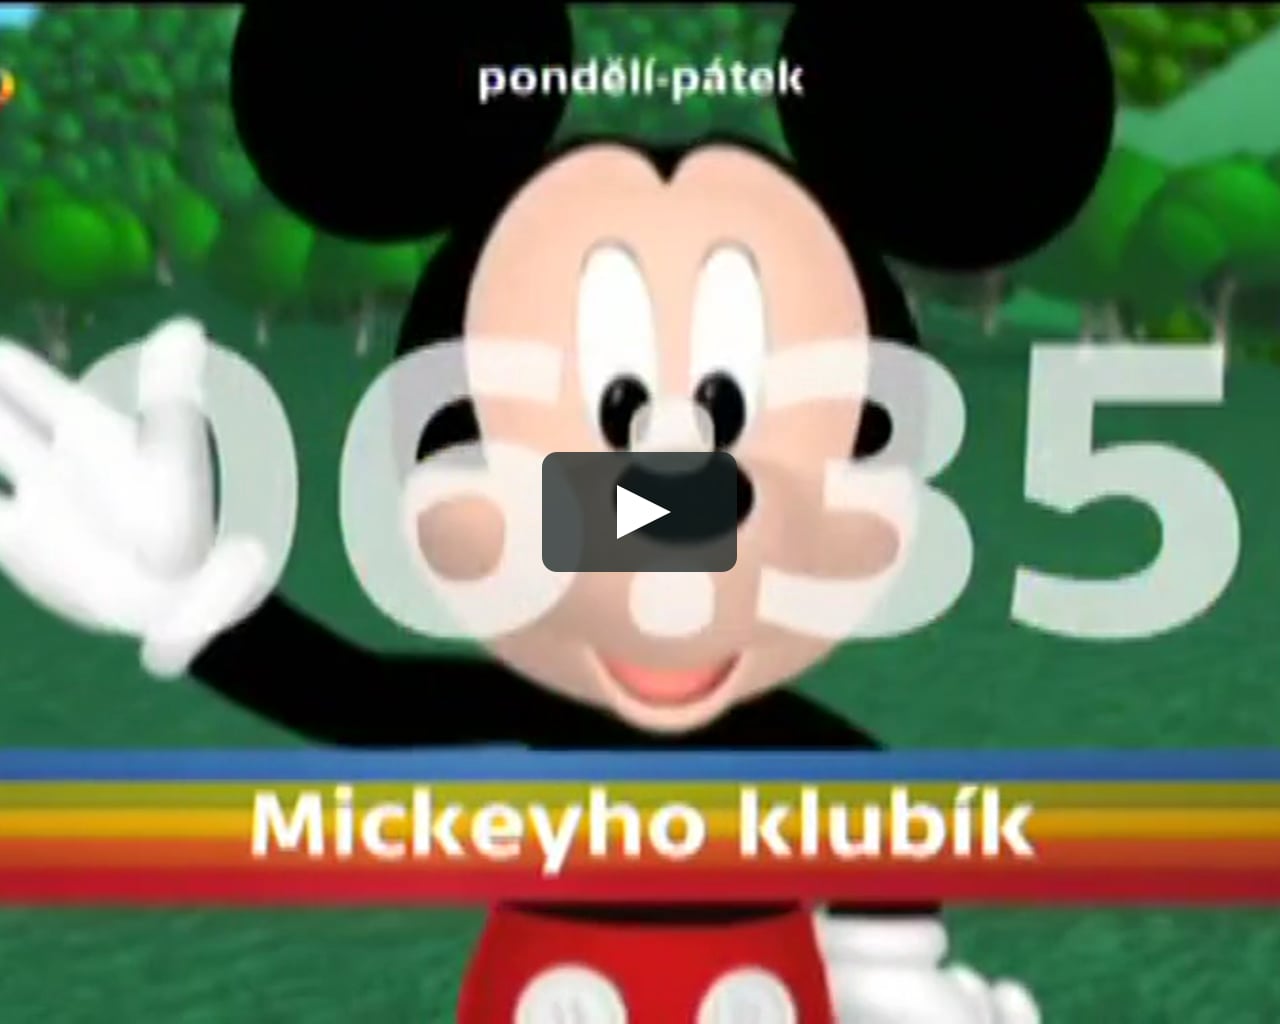 Mickeyho klubík - upoutávka květen 2016 ČTD on Vimeo